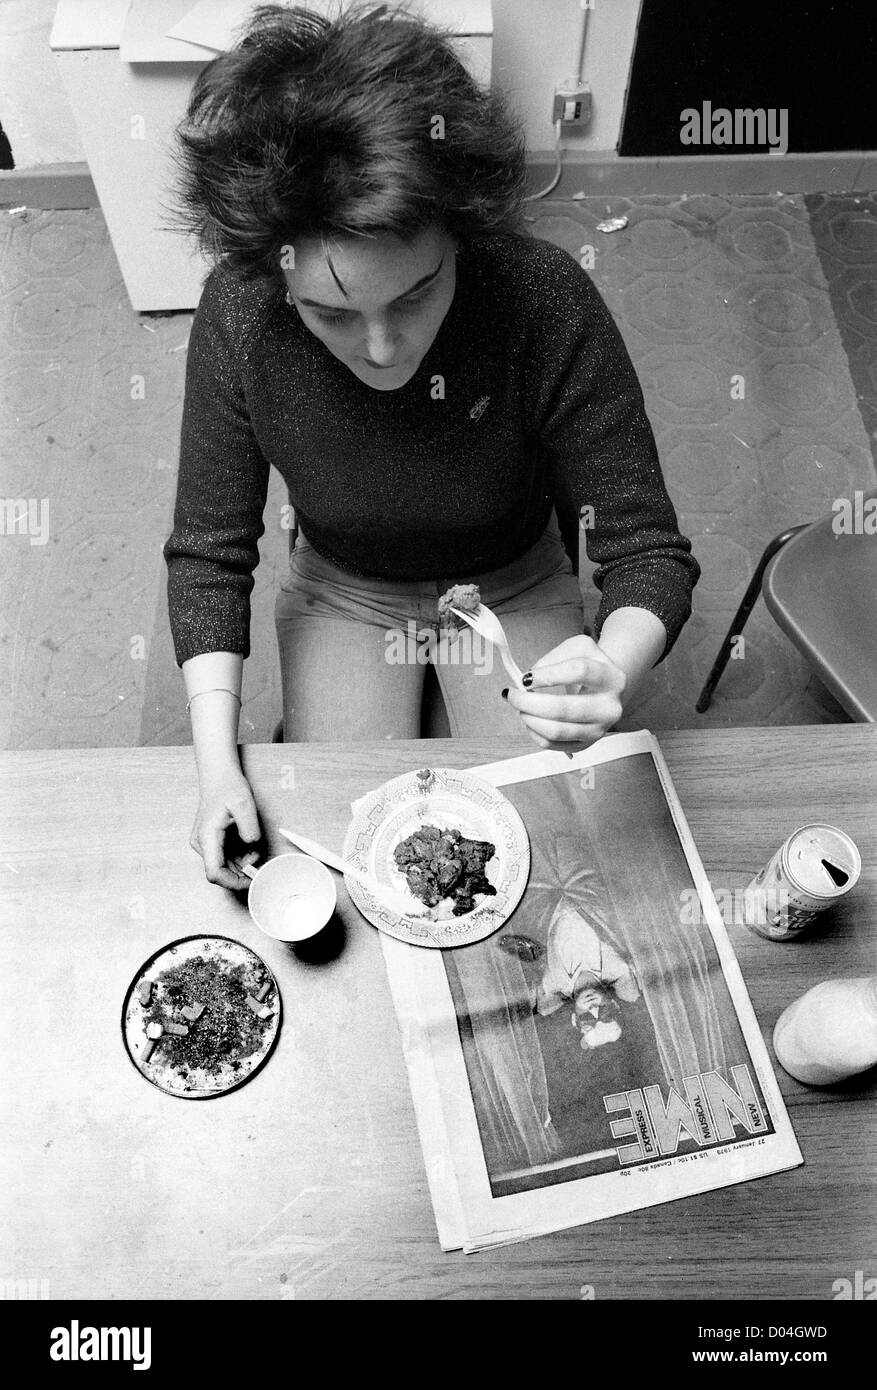 Adolescente punk lisant le NME tout en mangeant le déjeuner 27/1/79 PHOTO PAR DAVID BAGNALL adolescent jeunesse Grande-Bretagne britannique années 1970 punk ère histoire sociale Angleterre Anglais Banque D'Images